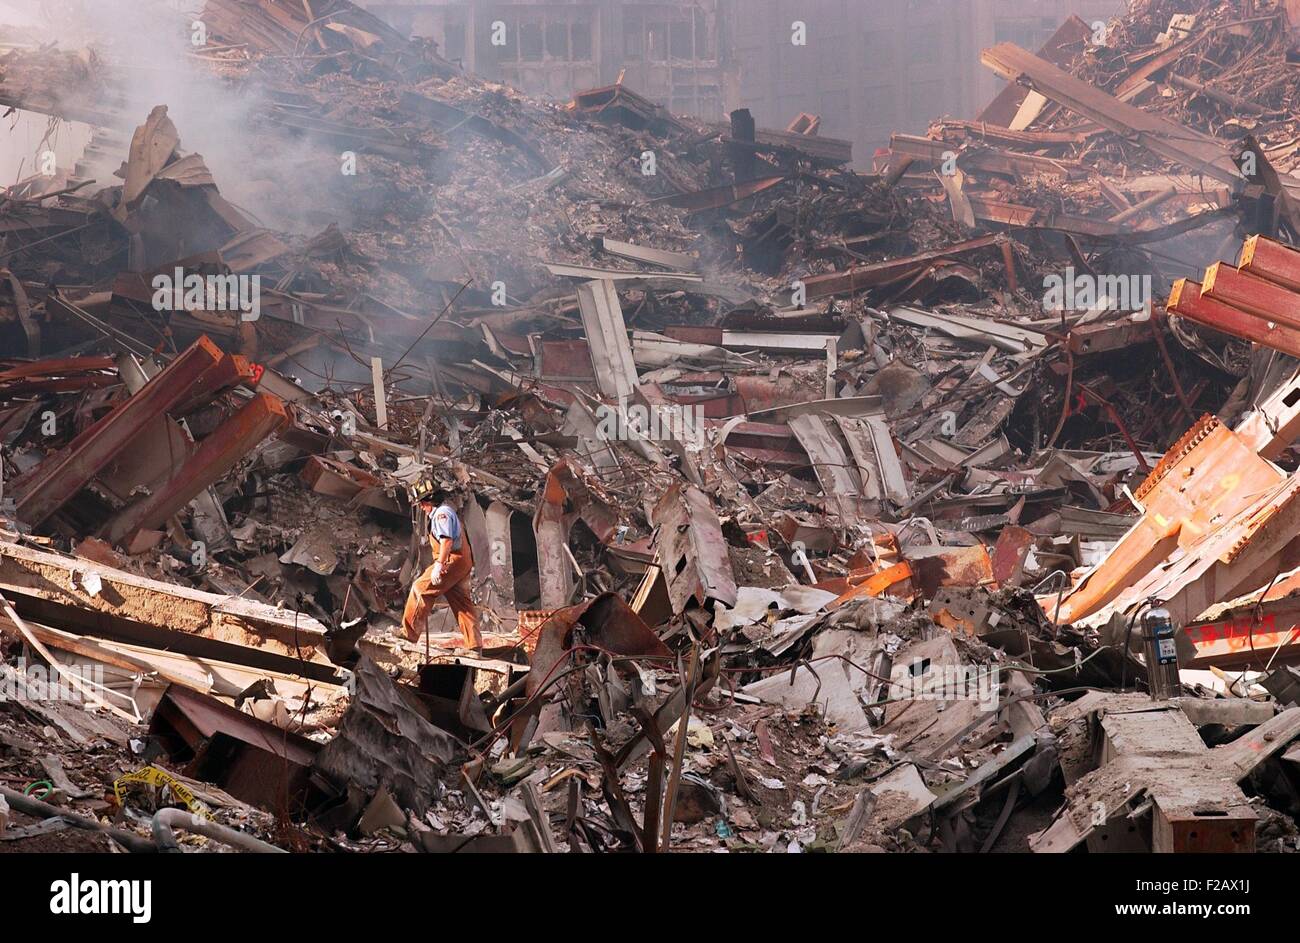 New York City Fire Fighter herüber Schwelbrände und Trümmer am Ground Zero, 18. September 2001. World Trade Center in New York City, nach dem 11. September 2001 Terroranschläge. (BSLOC_2015_2_96) Stockfoto